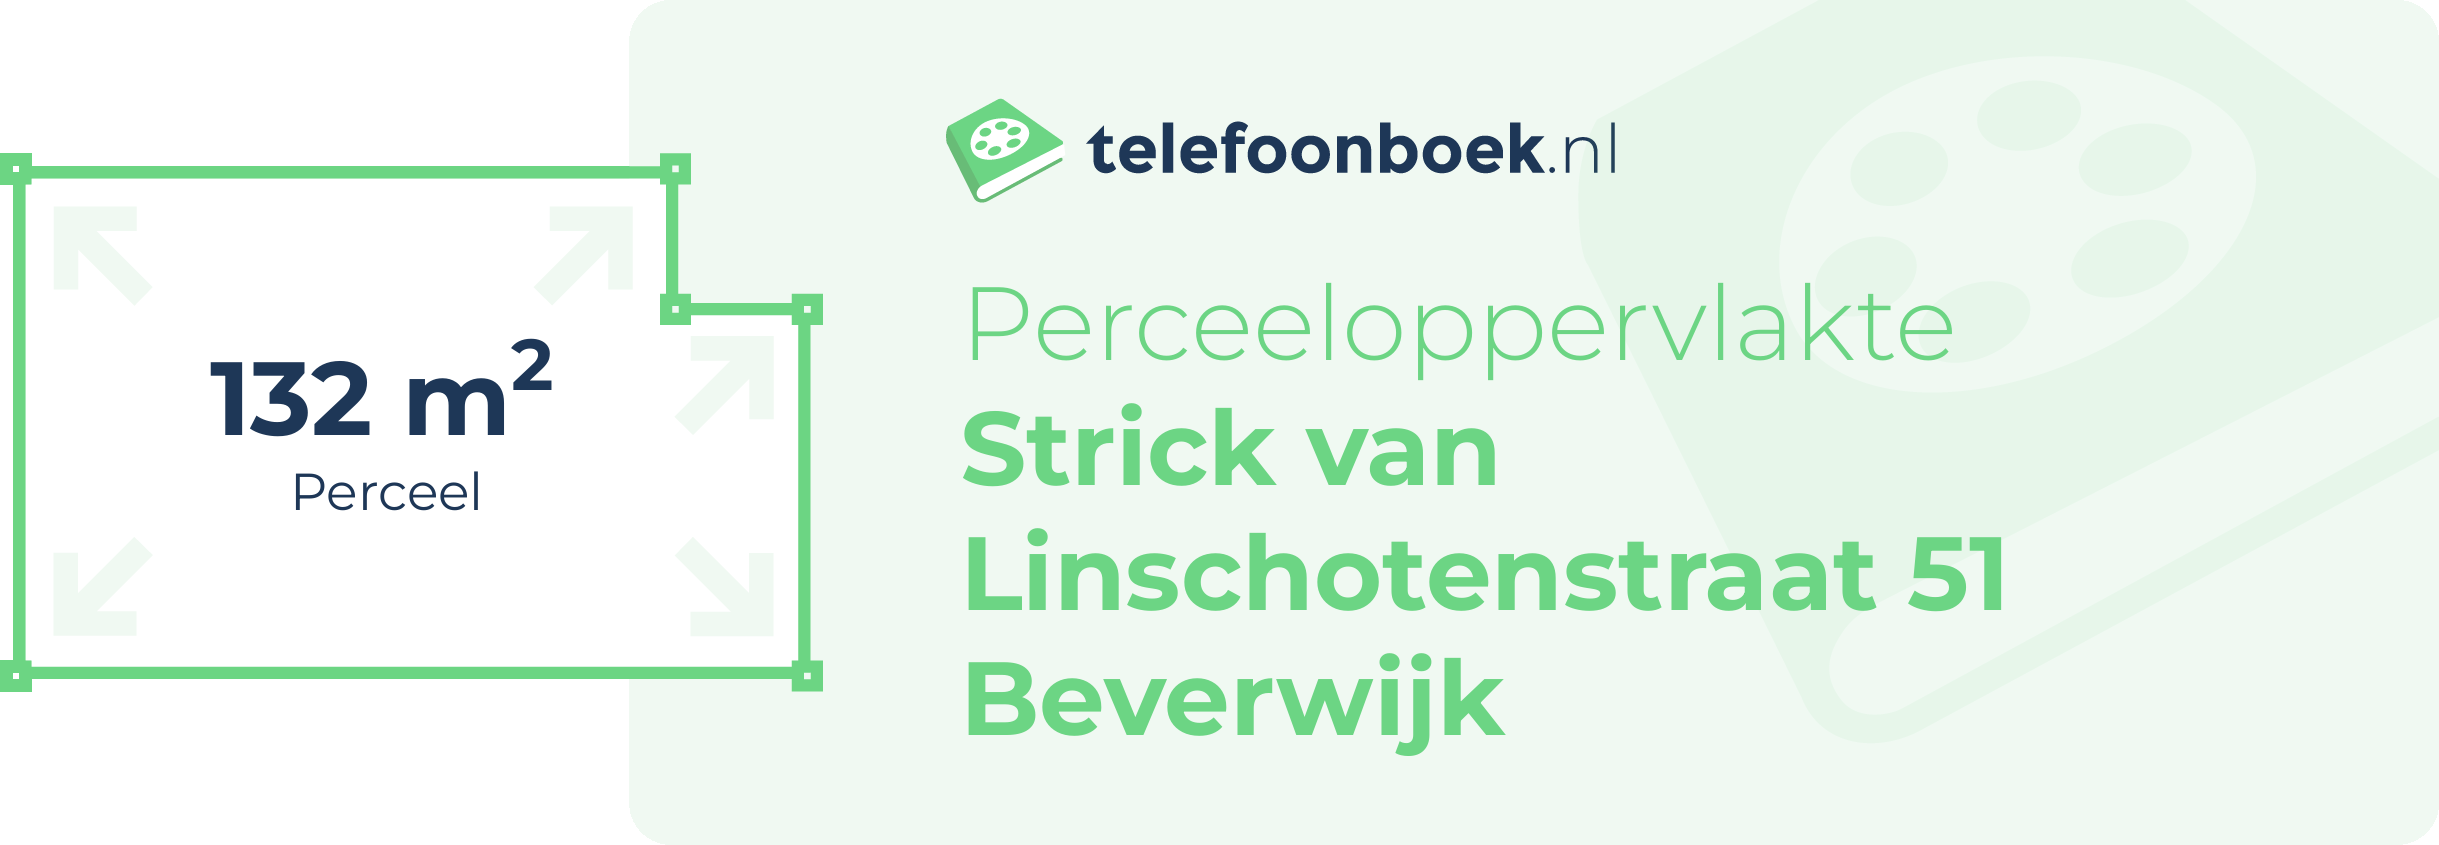 Perceeloppervlakte Strick Van Linschotenstraat 51 Beverwijk